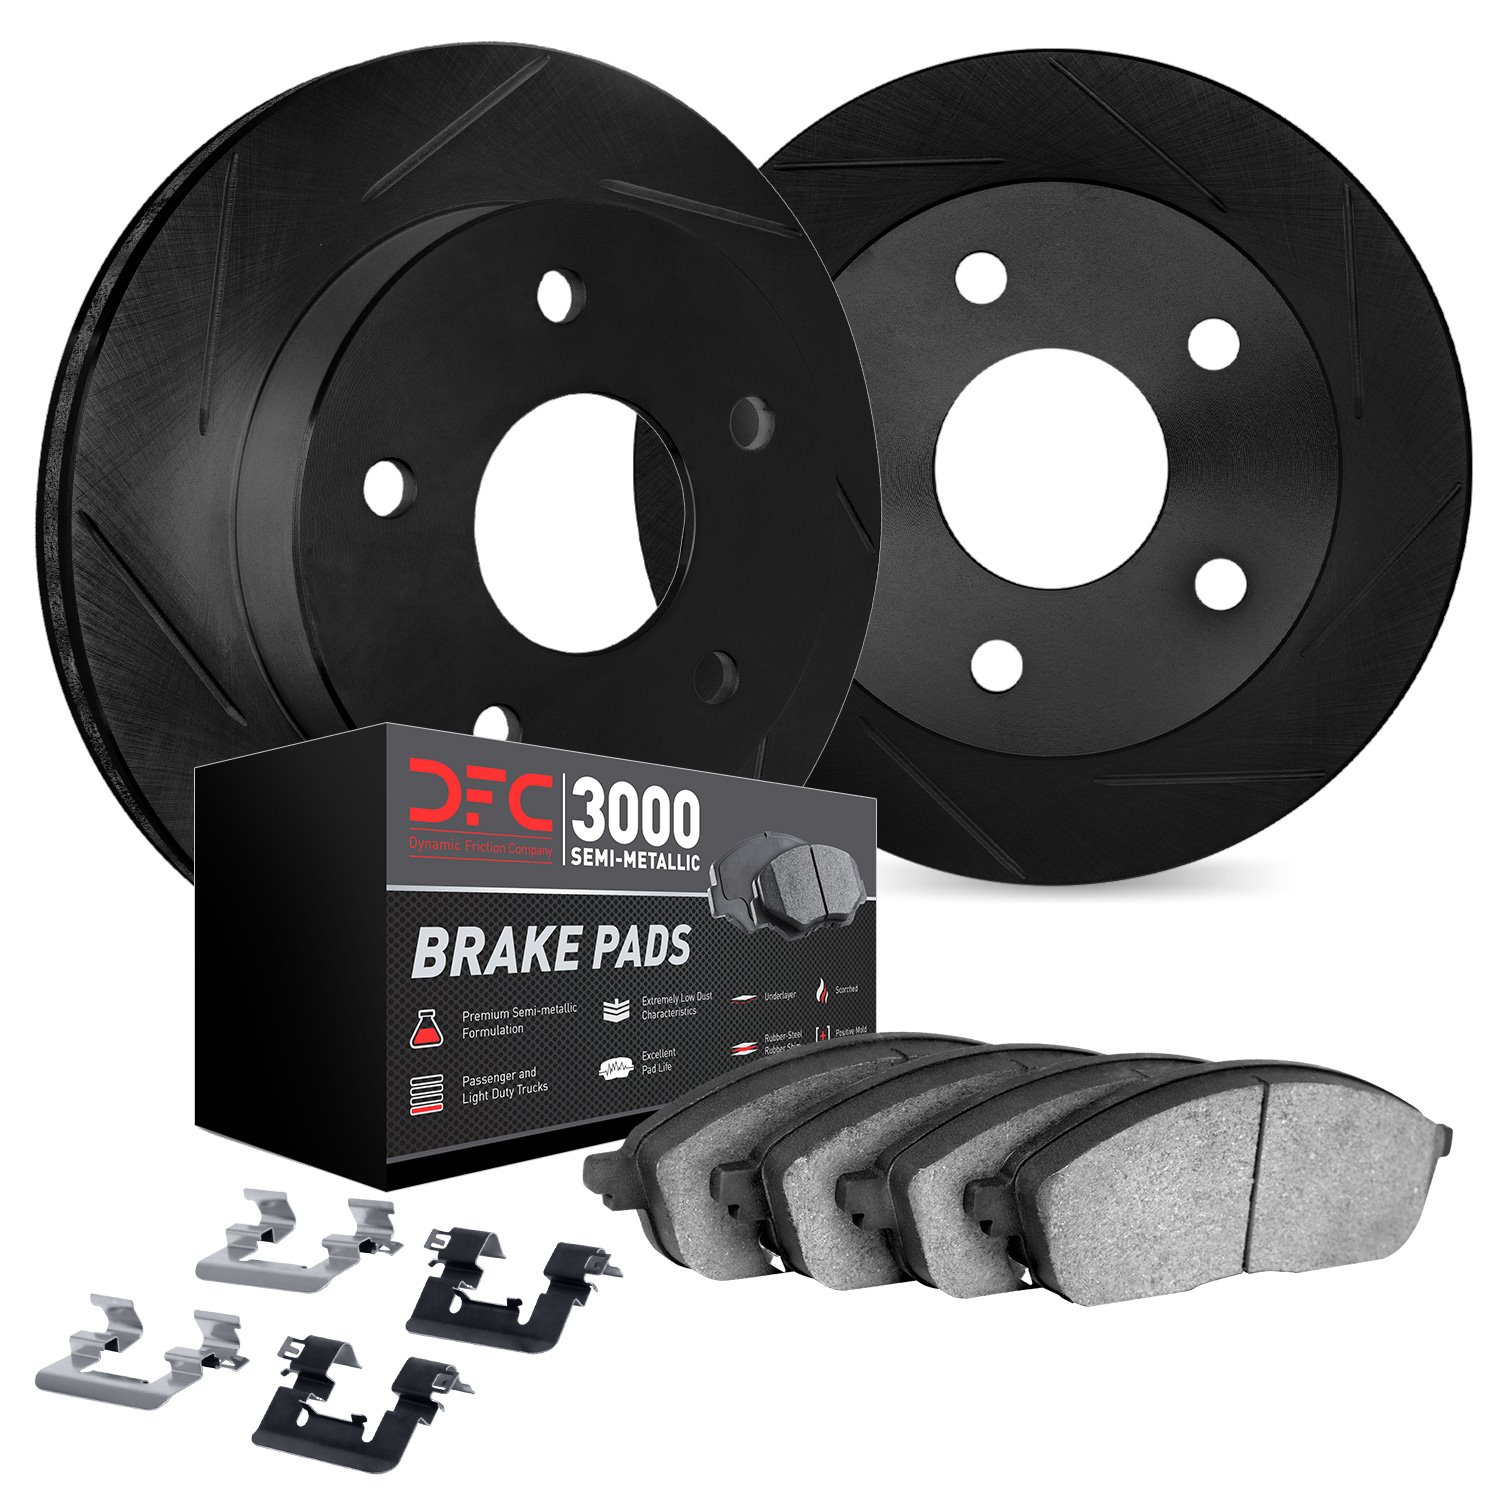 3112-63107 Slotted Brake Rotors with 3000-Series Semi-Metallic Brake Pads Kit & Hardware [Black], 2006-2012 Mercedes-Benz, Posit